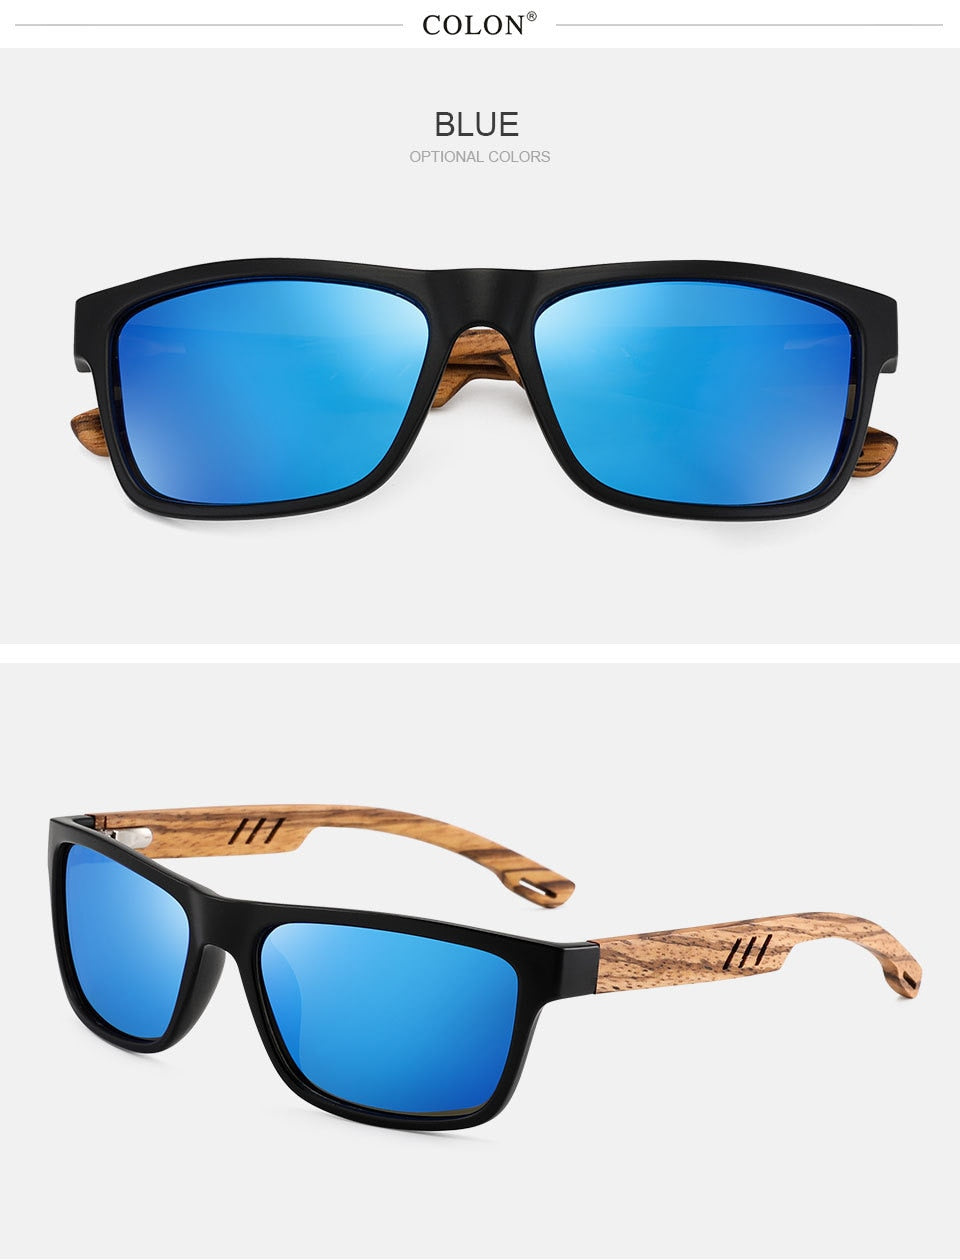 Yimaruili Unisex Full Rim Rectangular Wooden Frame Polarized Lens Sunglasses 8016 Sunglasses Yimaruili Sunglasses   